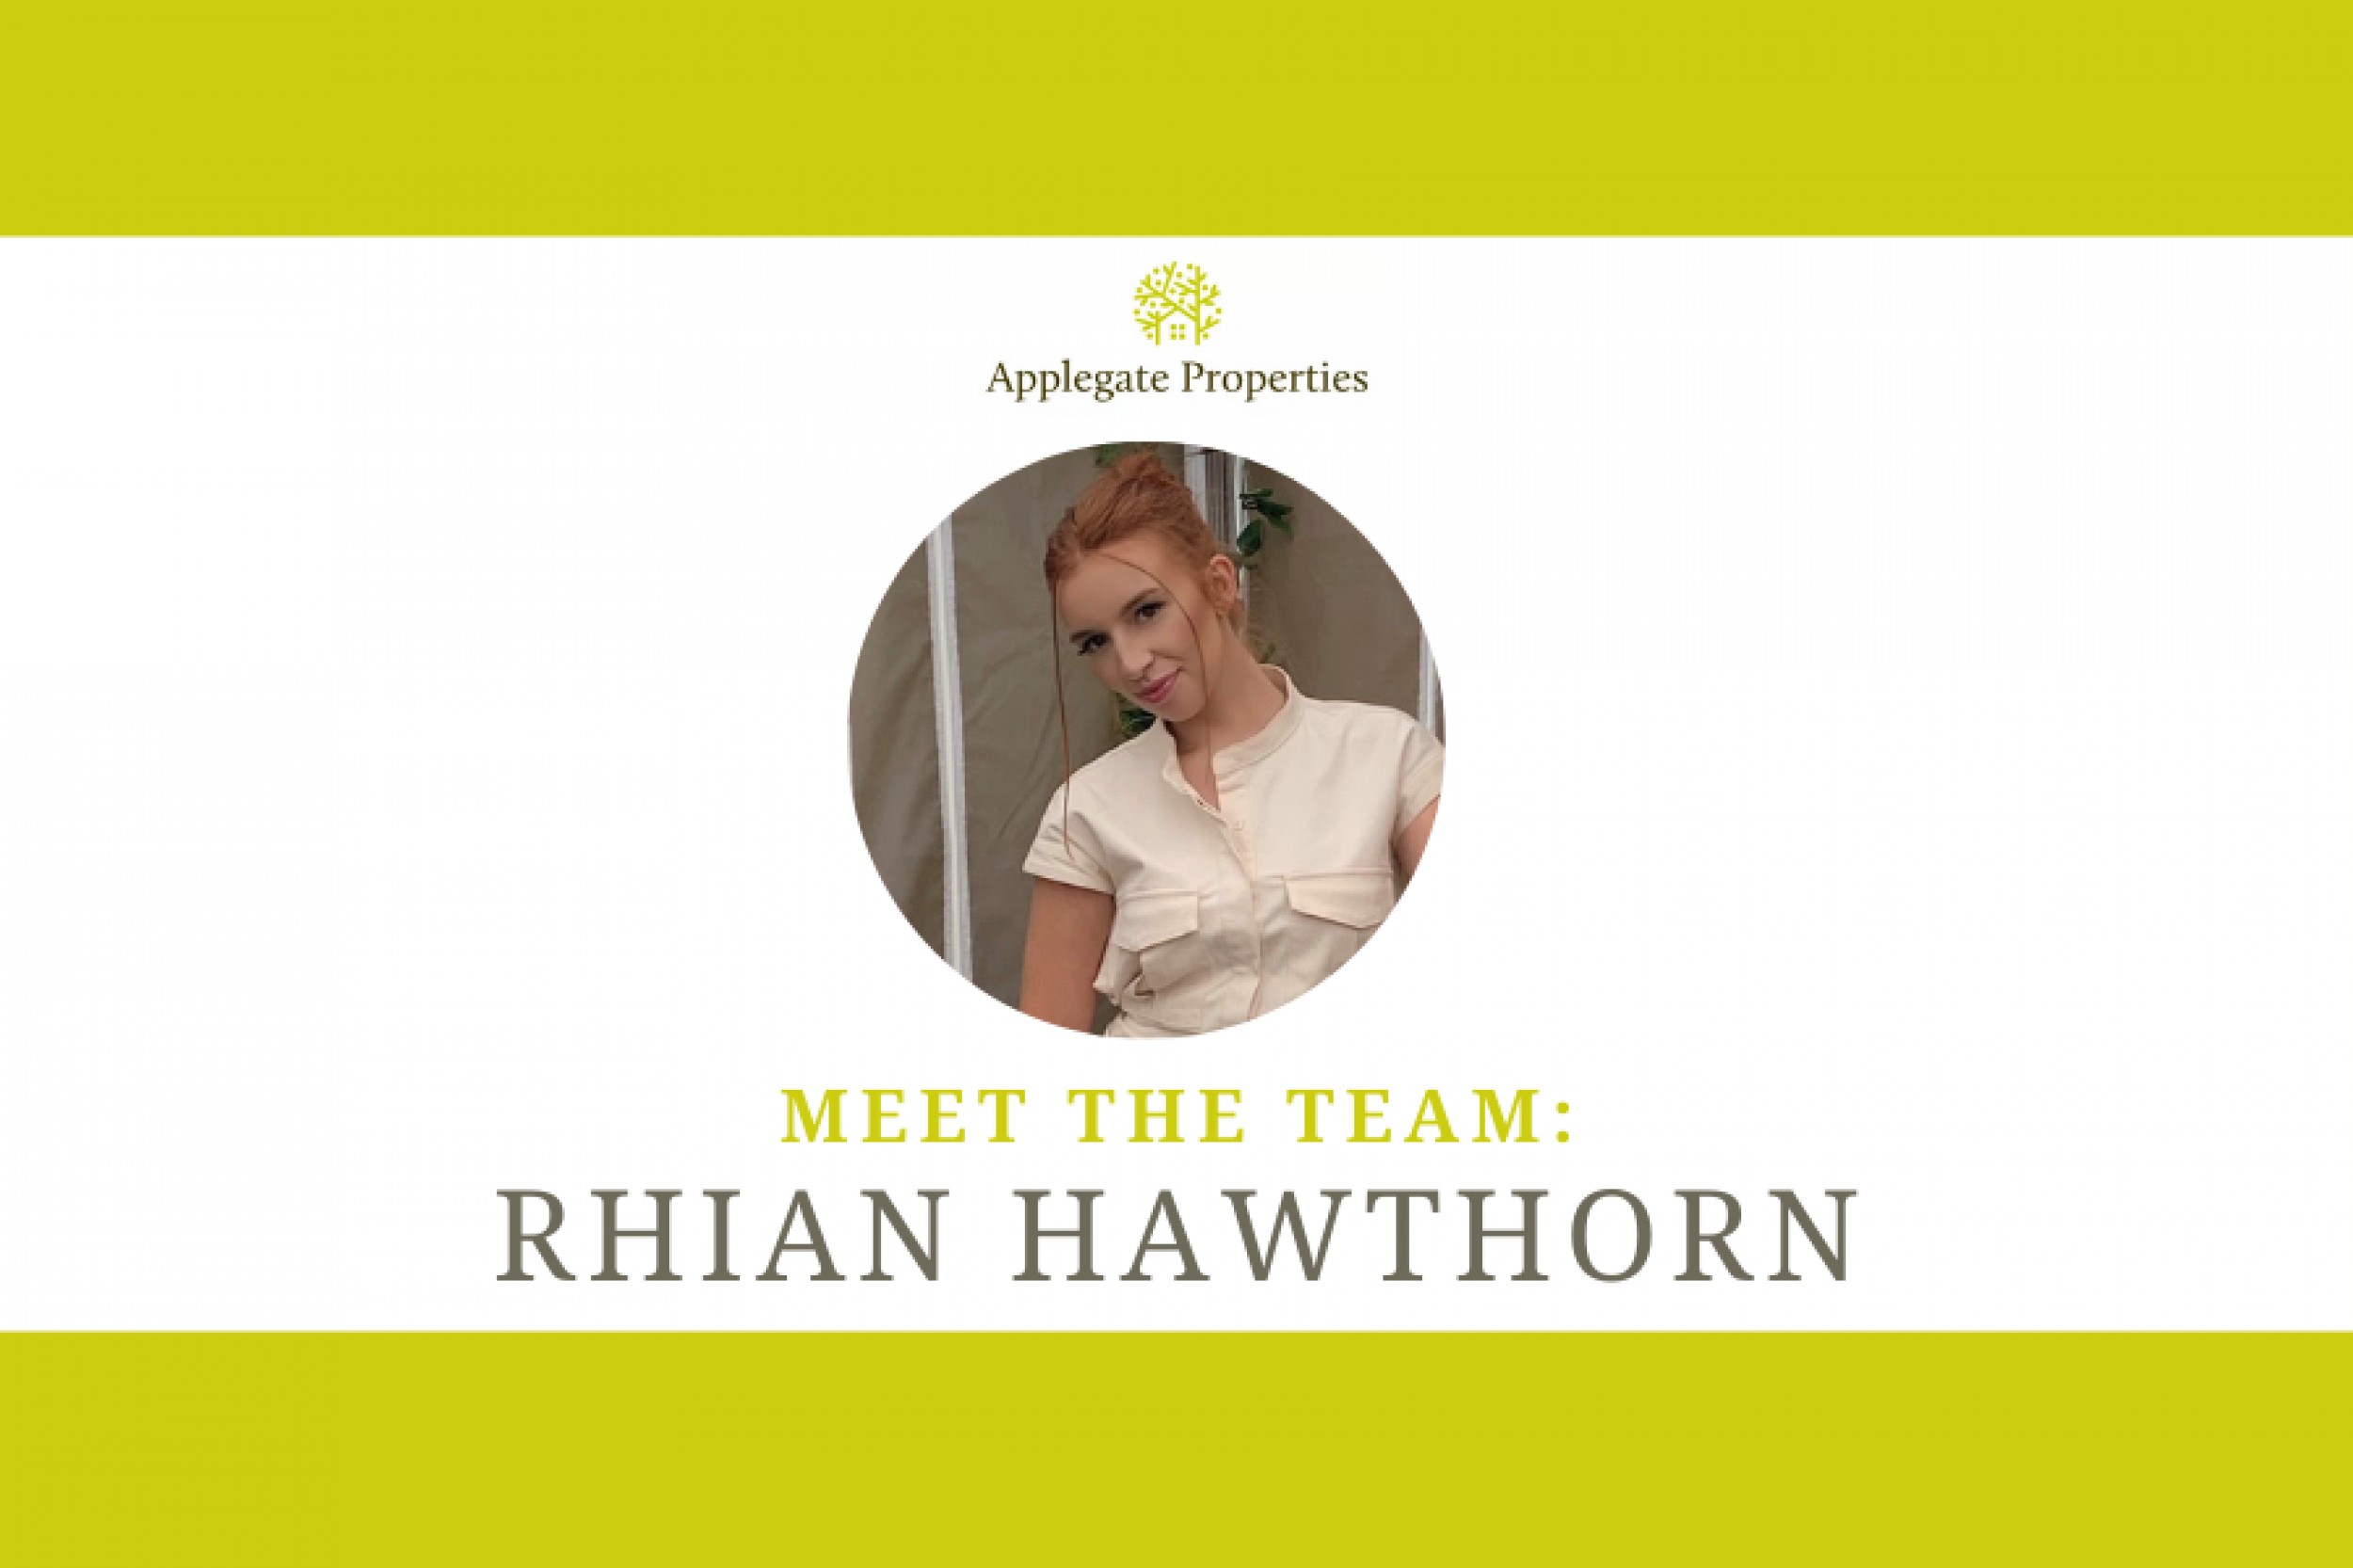 Meet the team: Rhian Hawthorn 